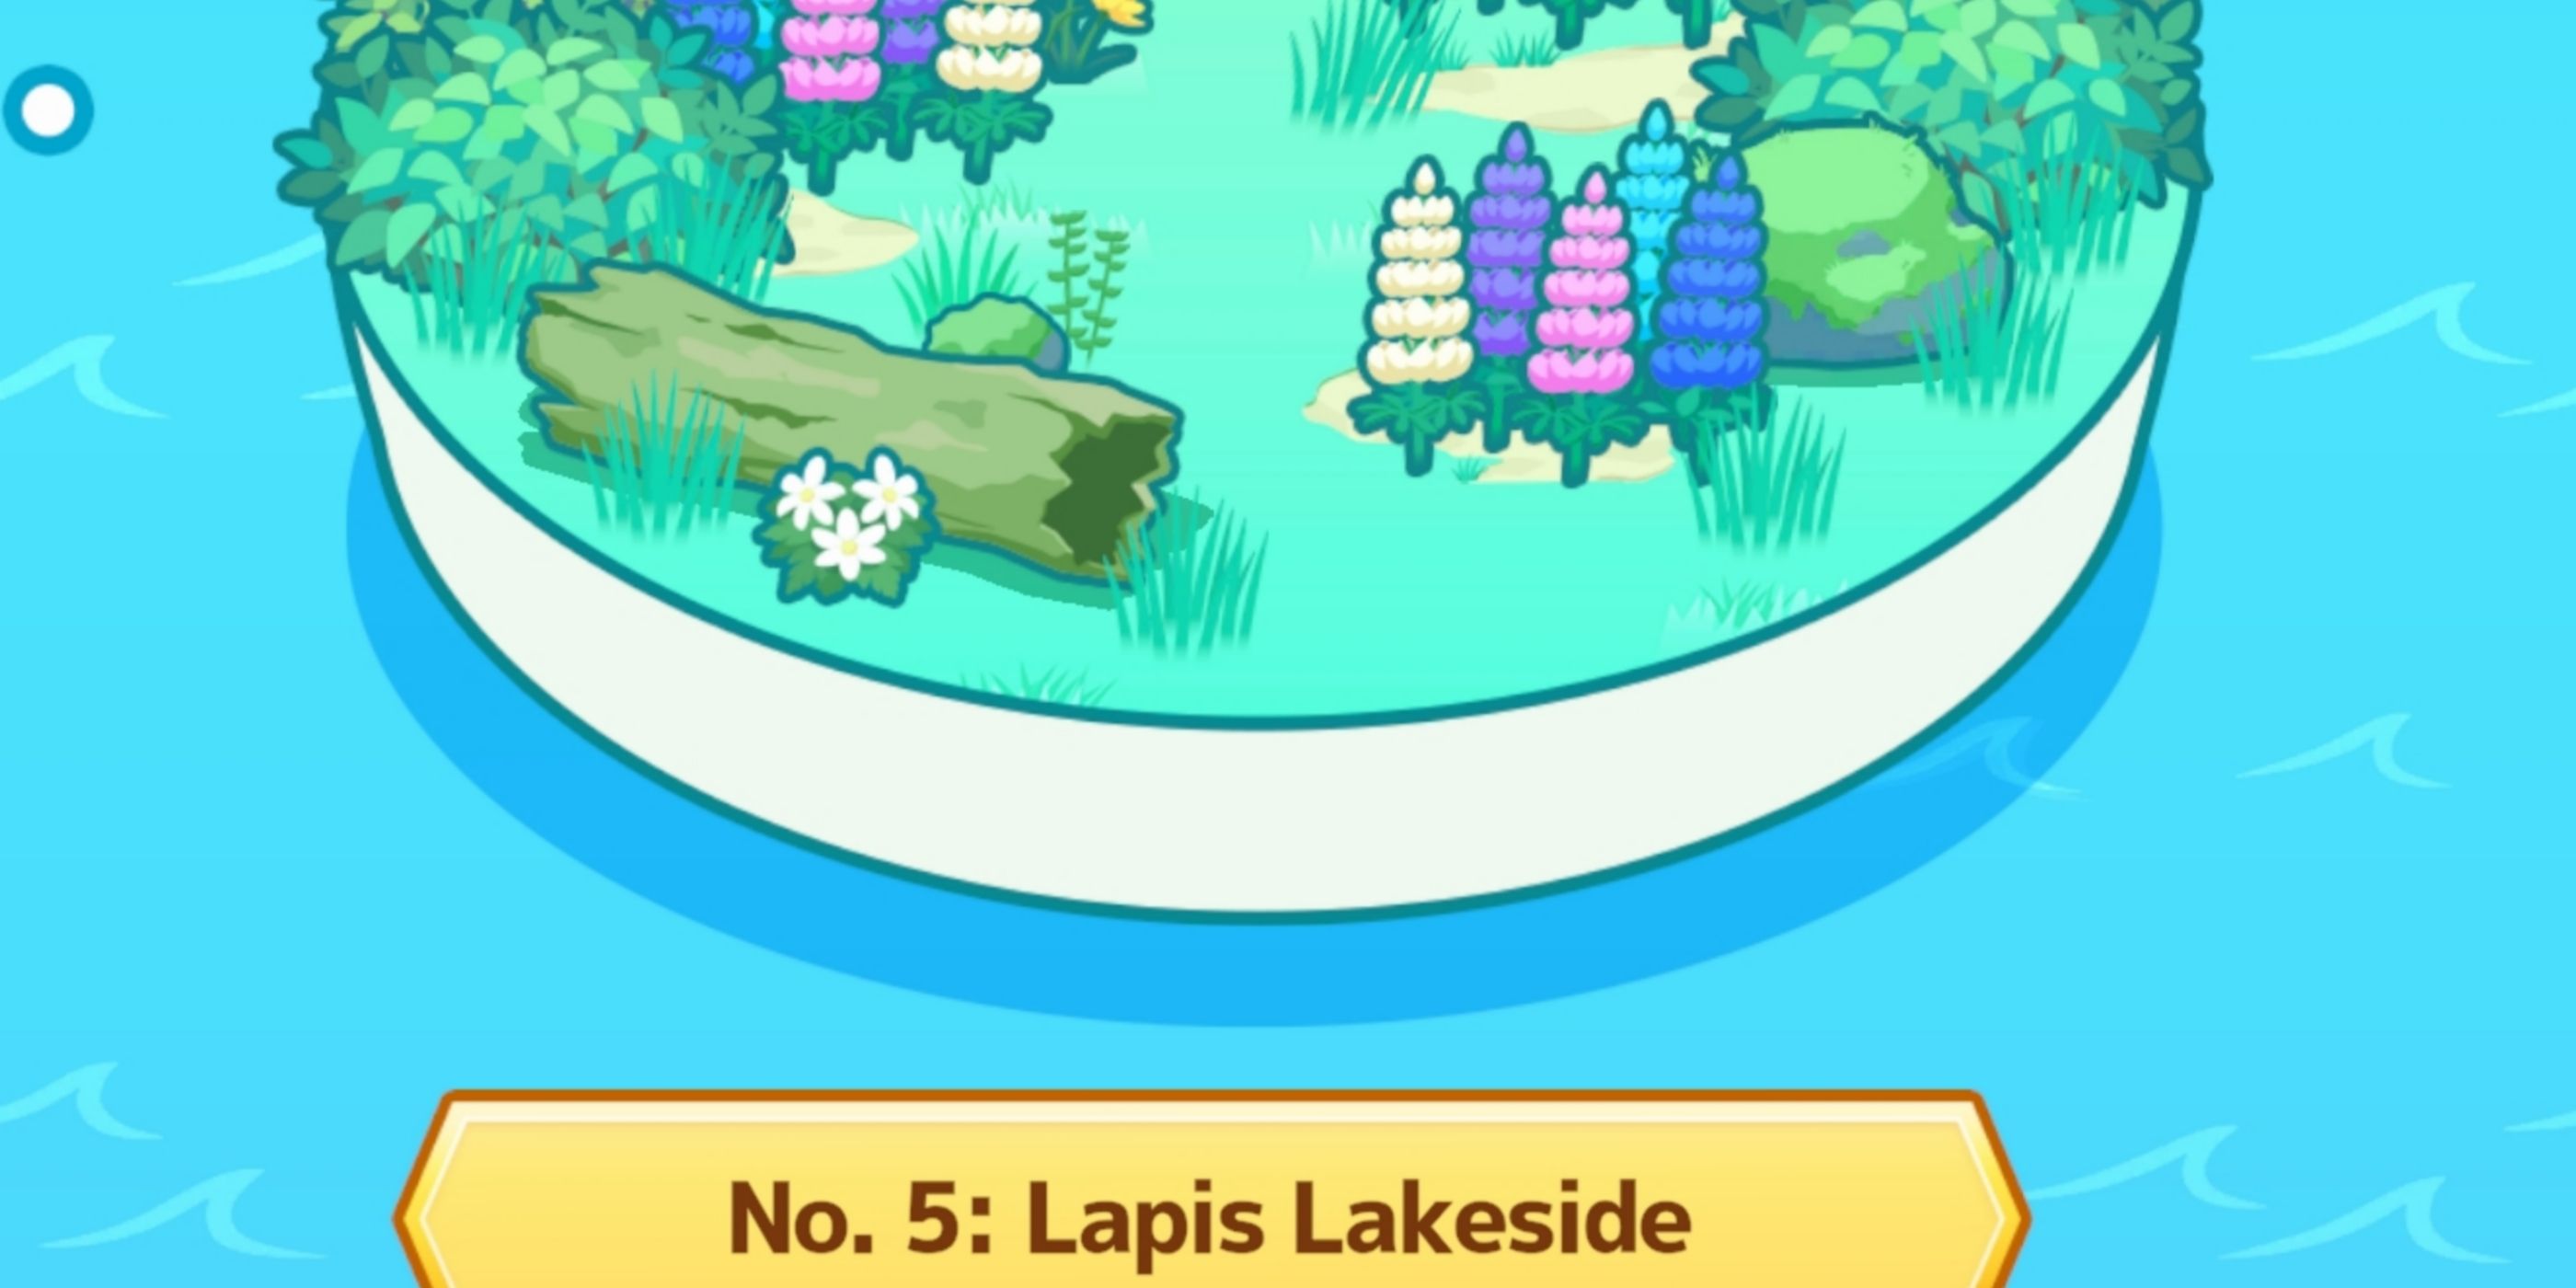 Lapis Lakeside in Pokemon Sleep